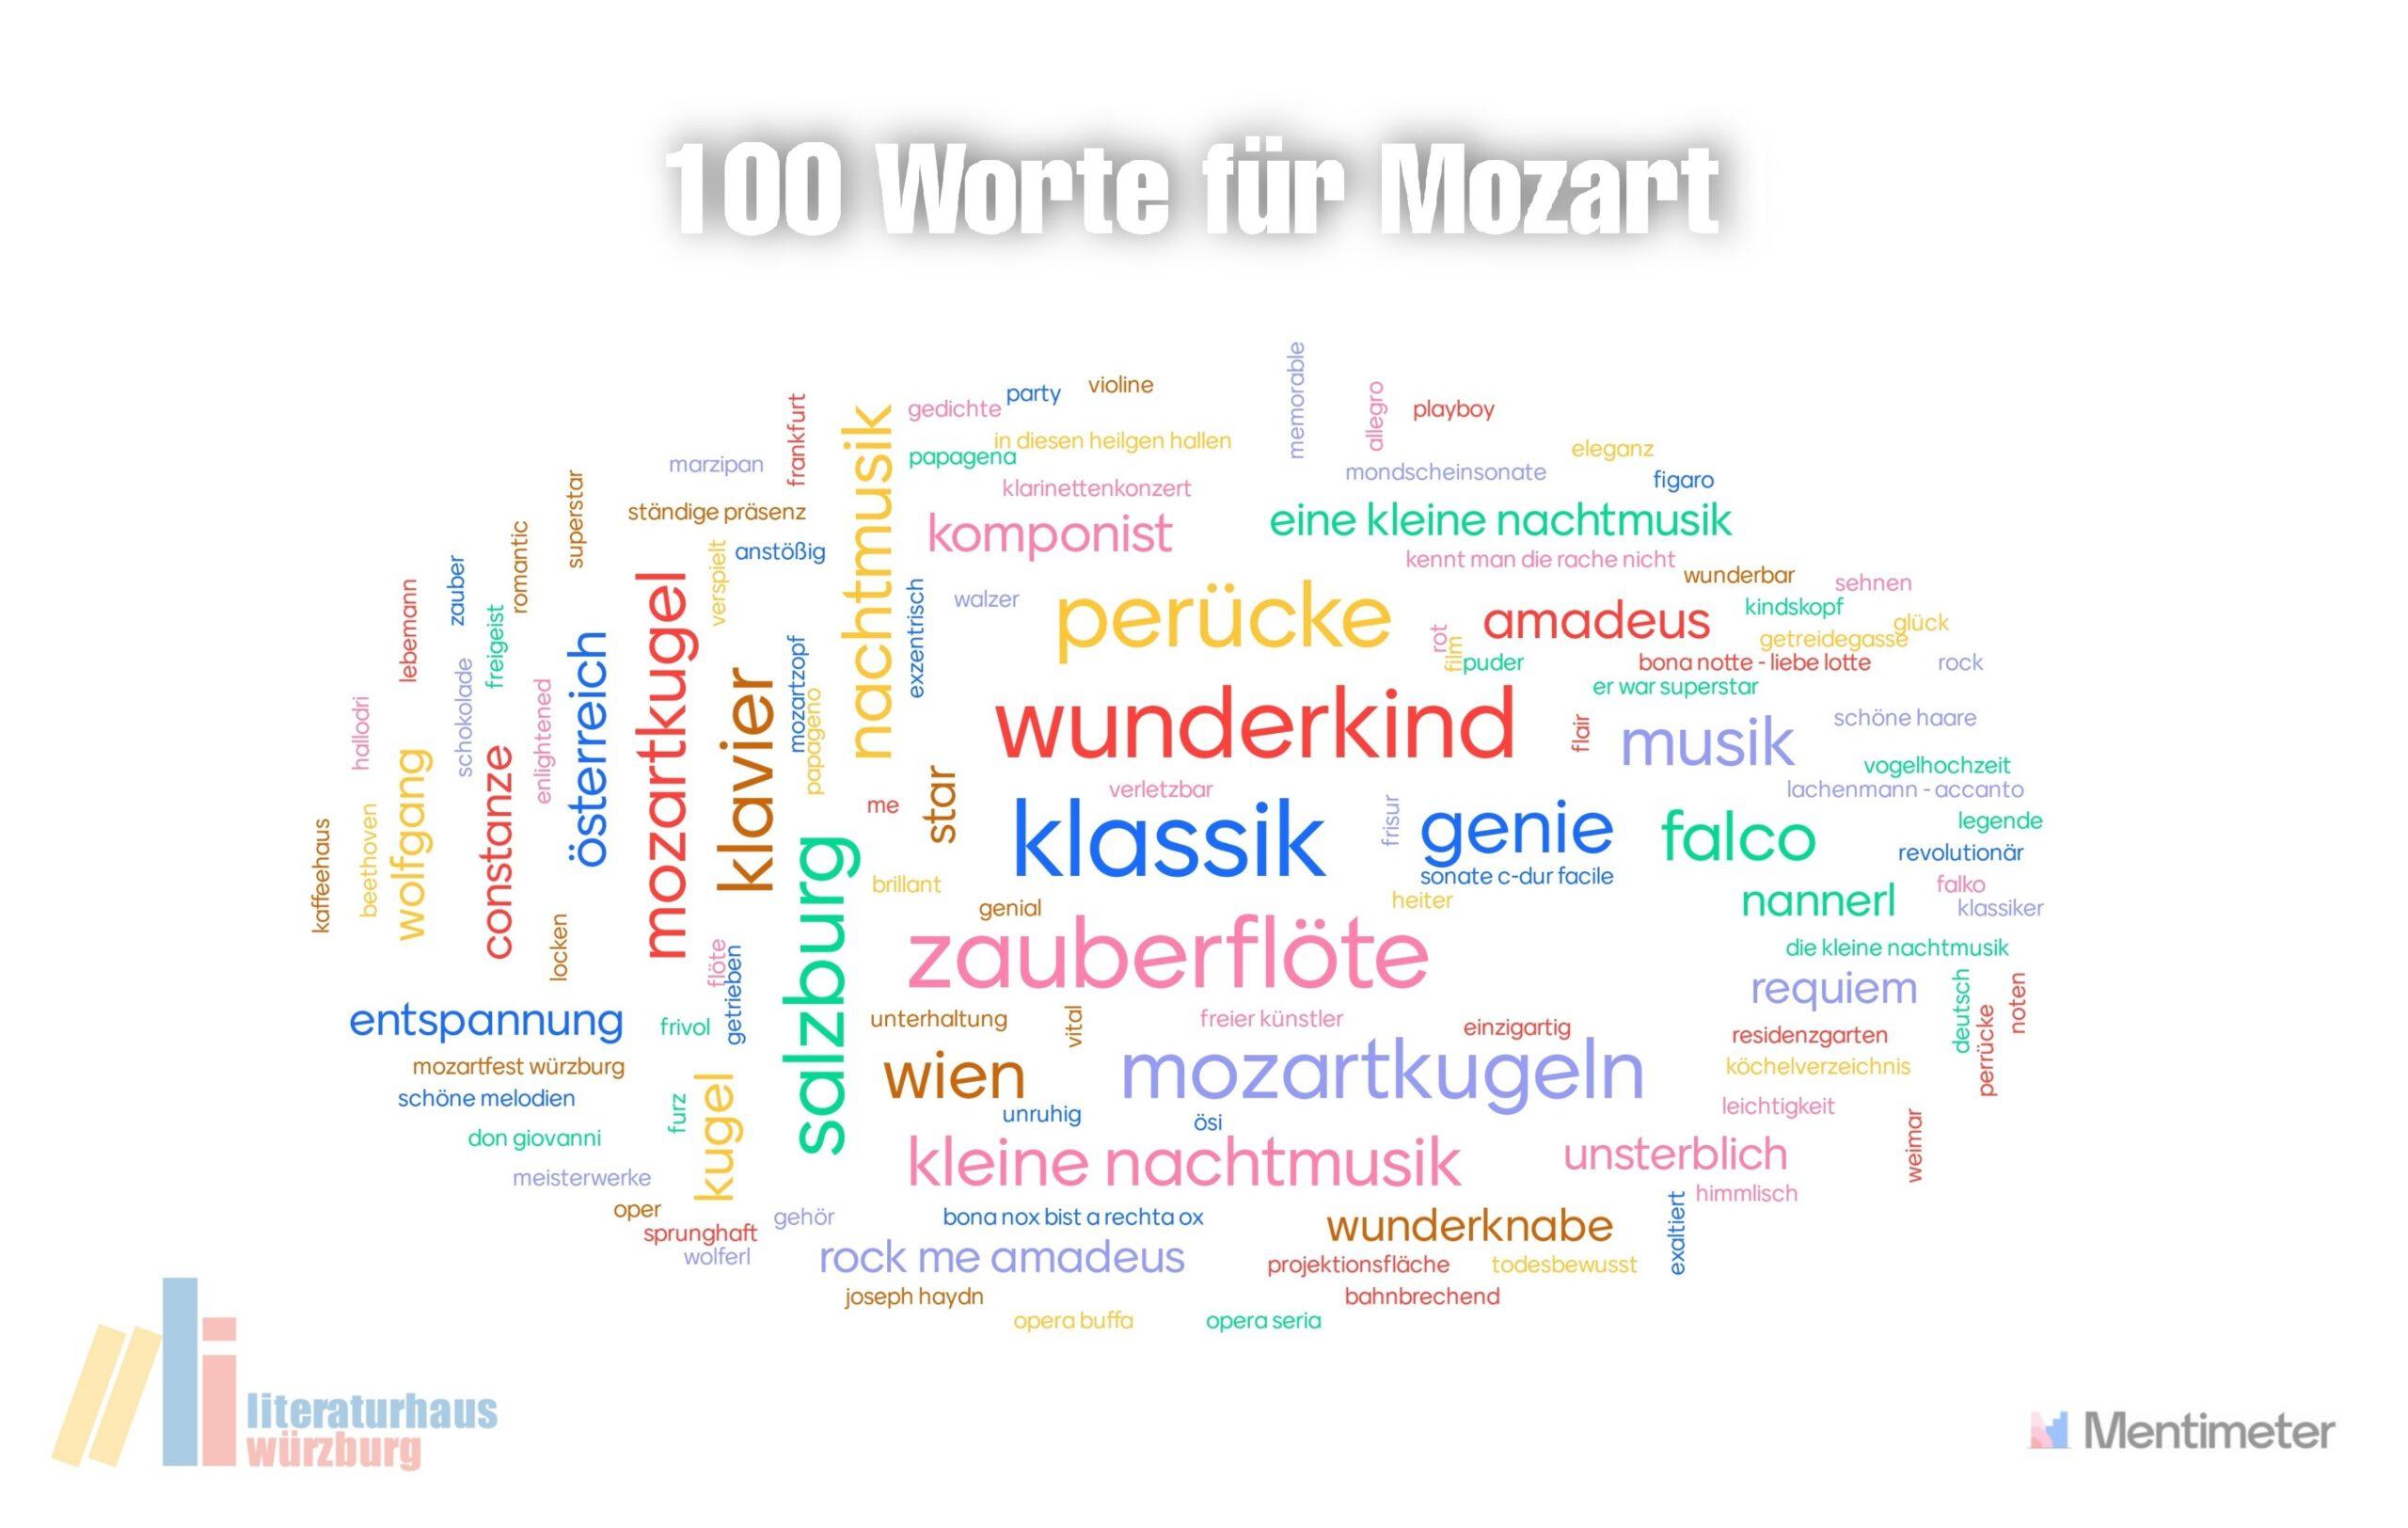 100 Worte für Mozart als Überschrift, darunter viele bunte Worte zu Mozart. Beispiele: Perücke, Wunderkind, Klassik, Zauberflöte, Genie, Kleine Nachtmusik, Wien, Komponist, Amadeus, Klavier, Mozartkugel, etc. 